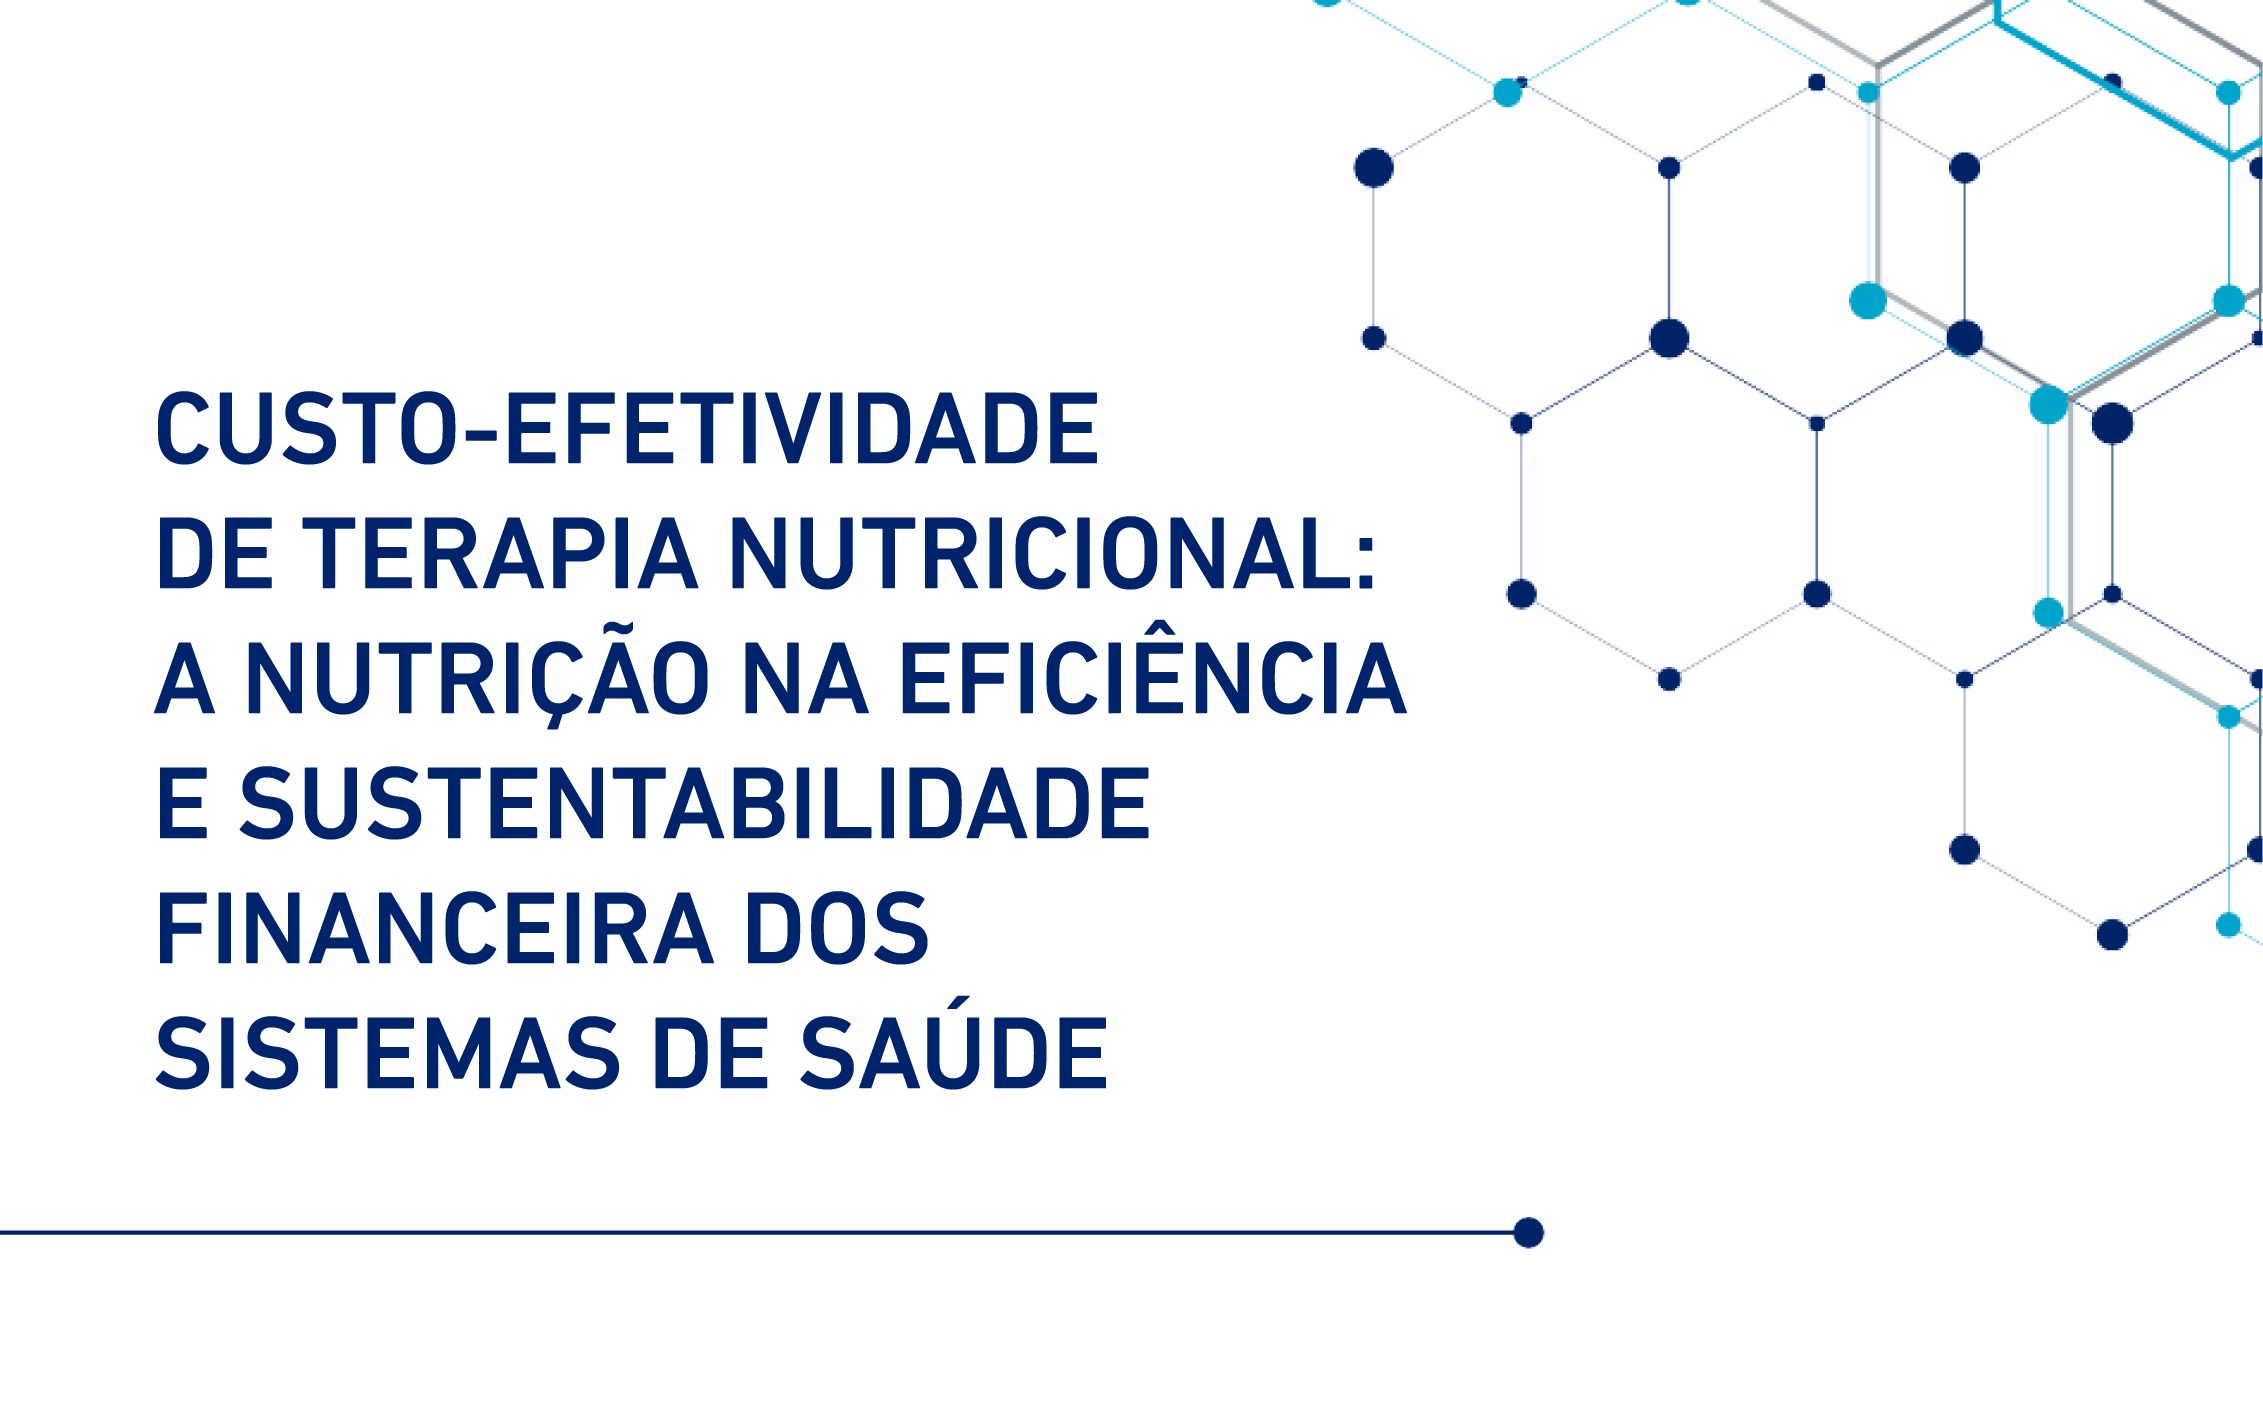 Custo-efetividade de Terapia Nutricional: A nutrição na eficiência e sustentabilidade financeira dos sistemas de saúde.